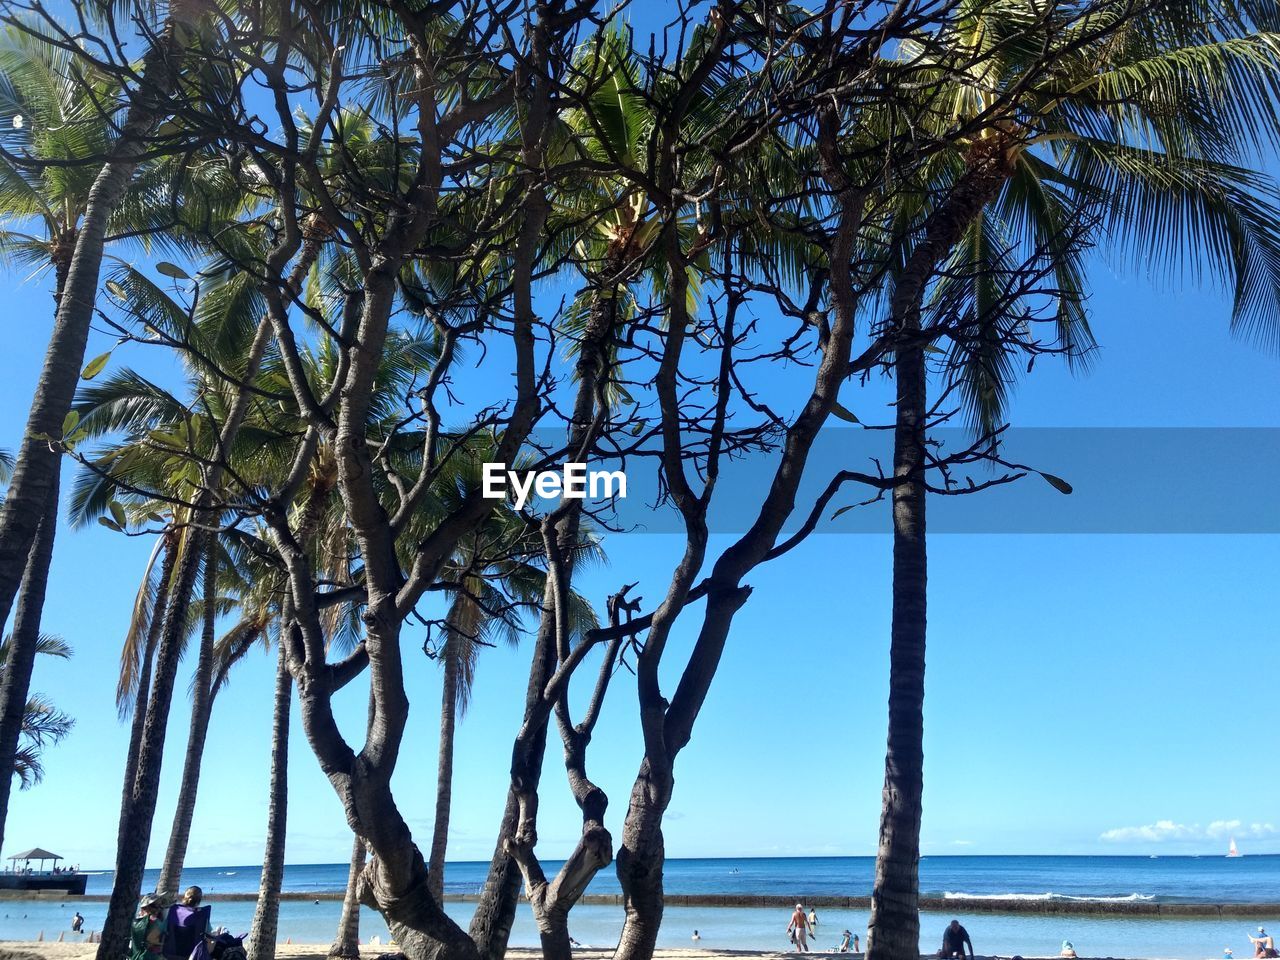 TREES ON BEACH AGAINST BLUE SKY